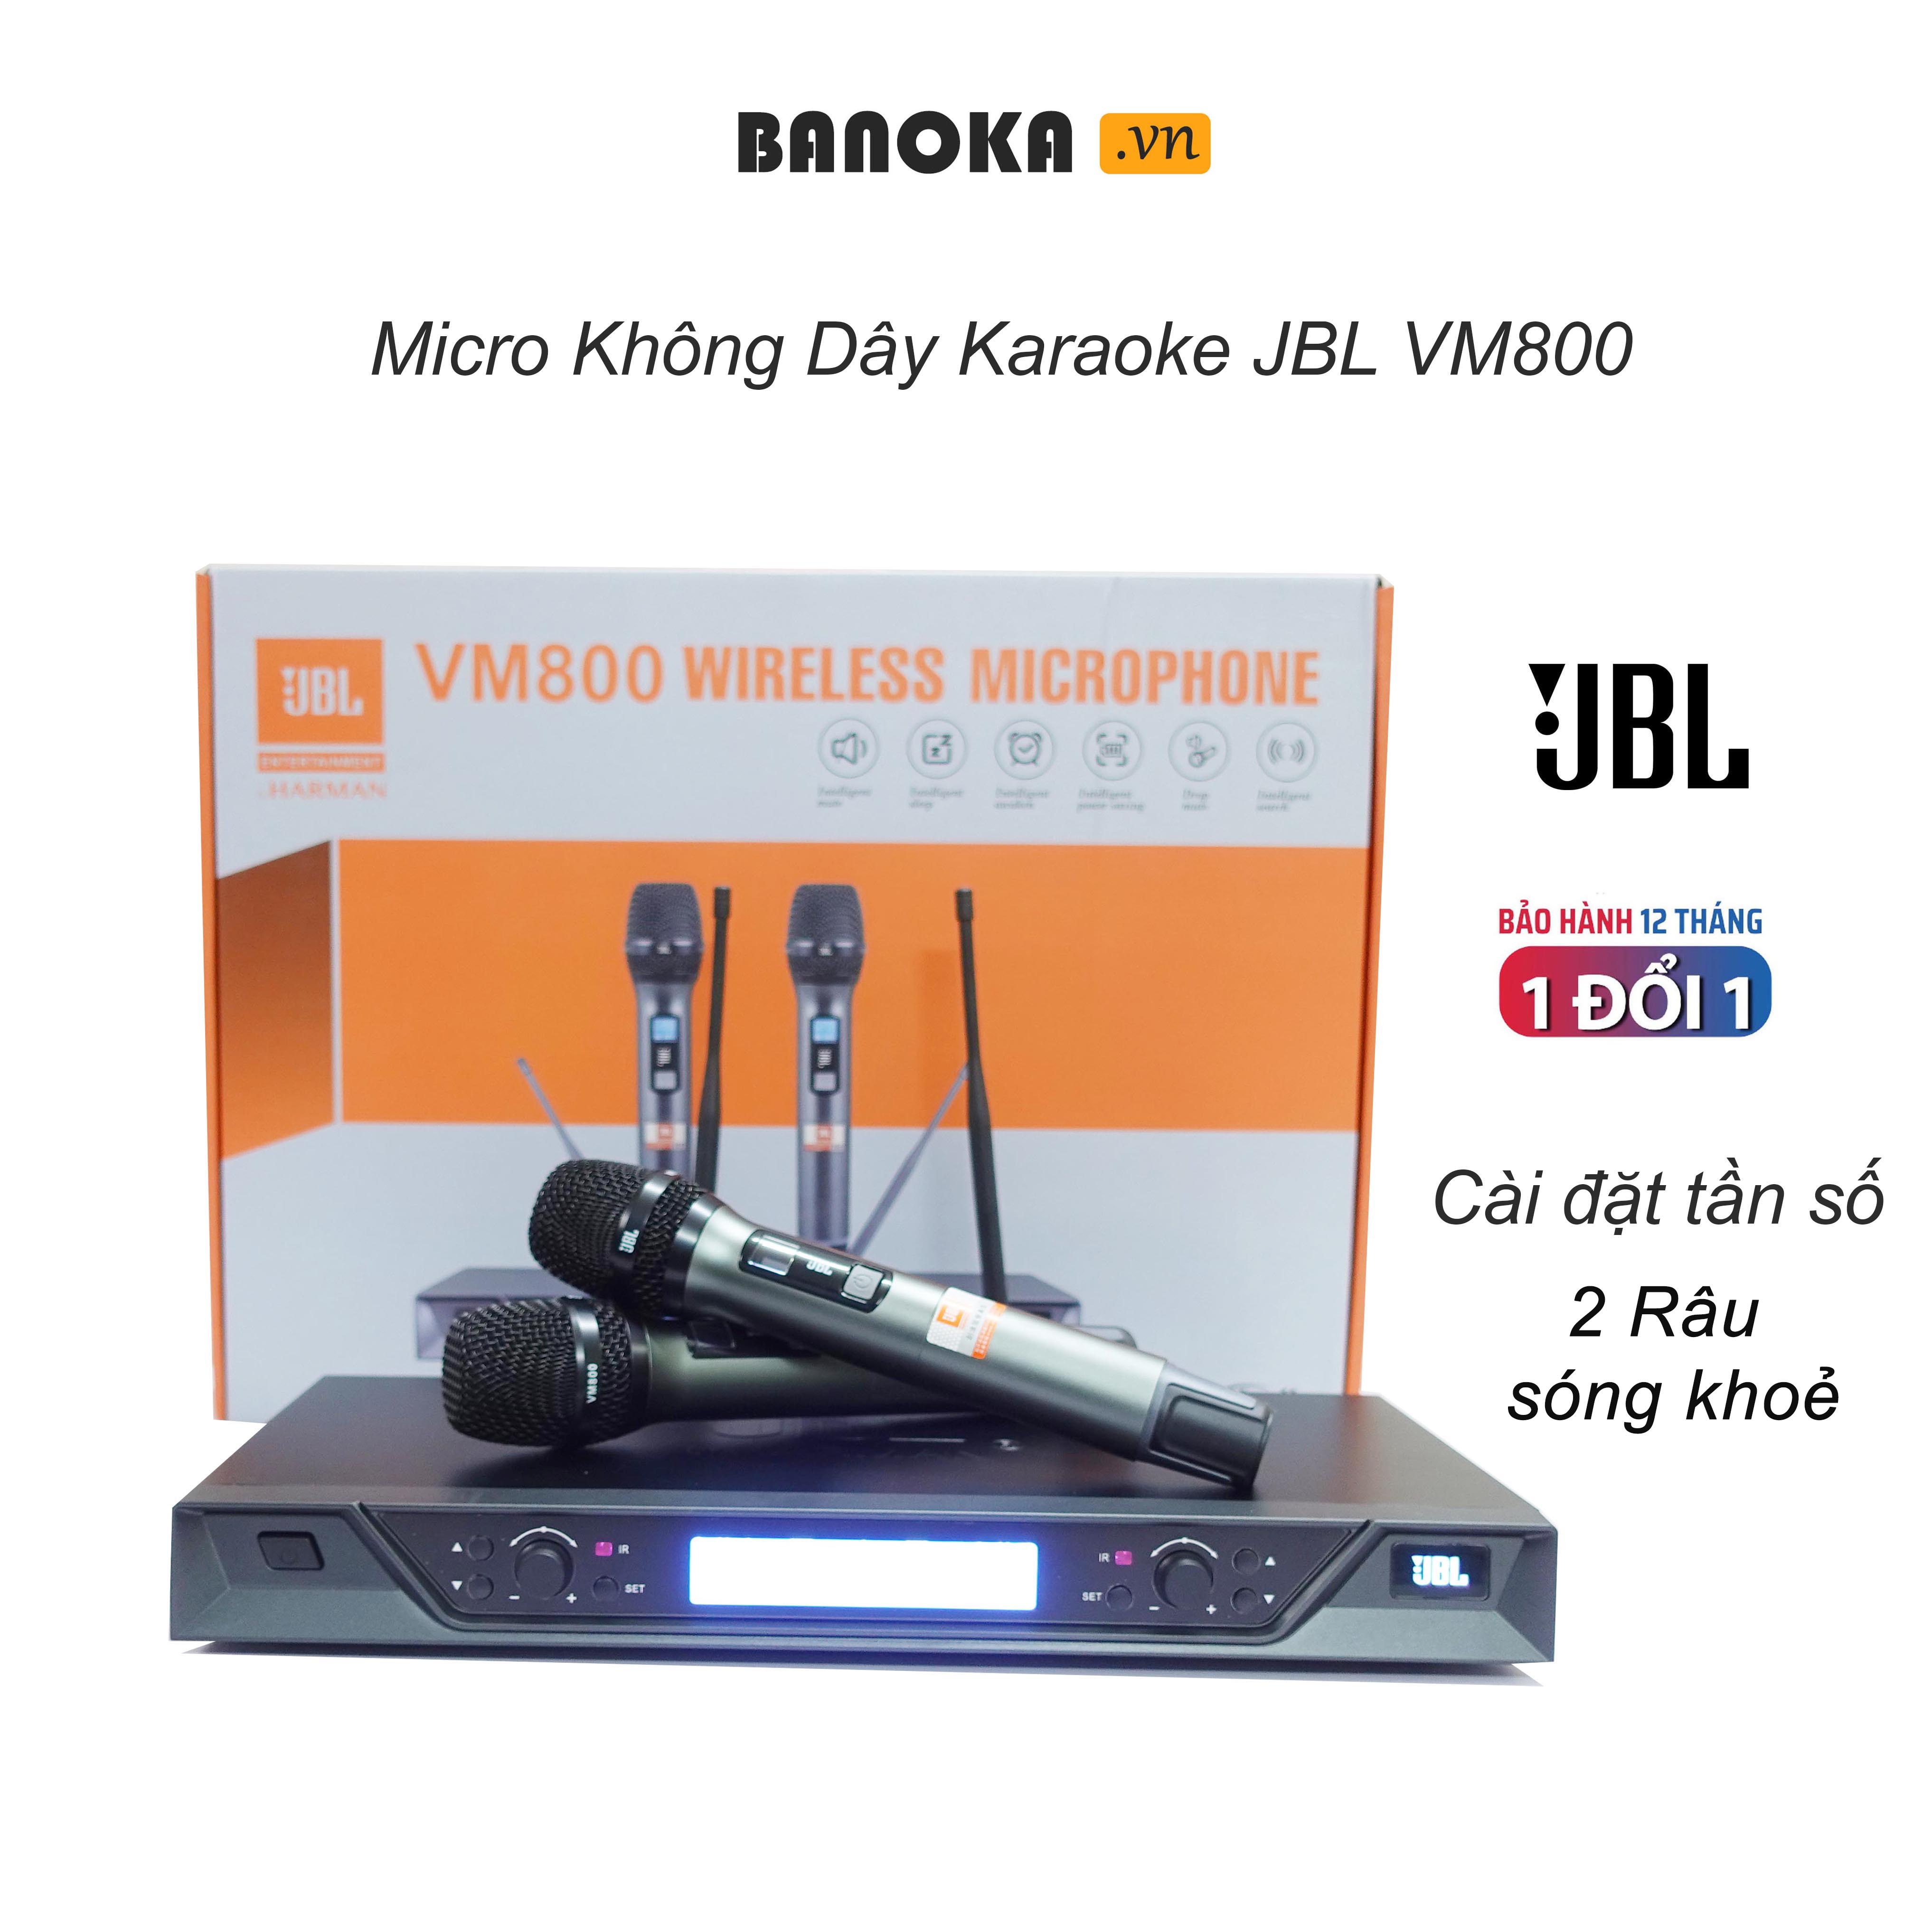 Bộ Micro Không Dây JBL VM800 Cao cấp, Cặp mic kim loại UHF Thu Tiếng Hay, 2 râu thu xa trên 30m, cài tần số